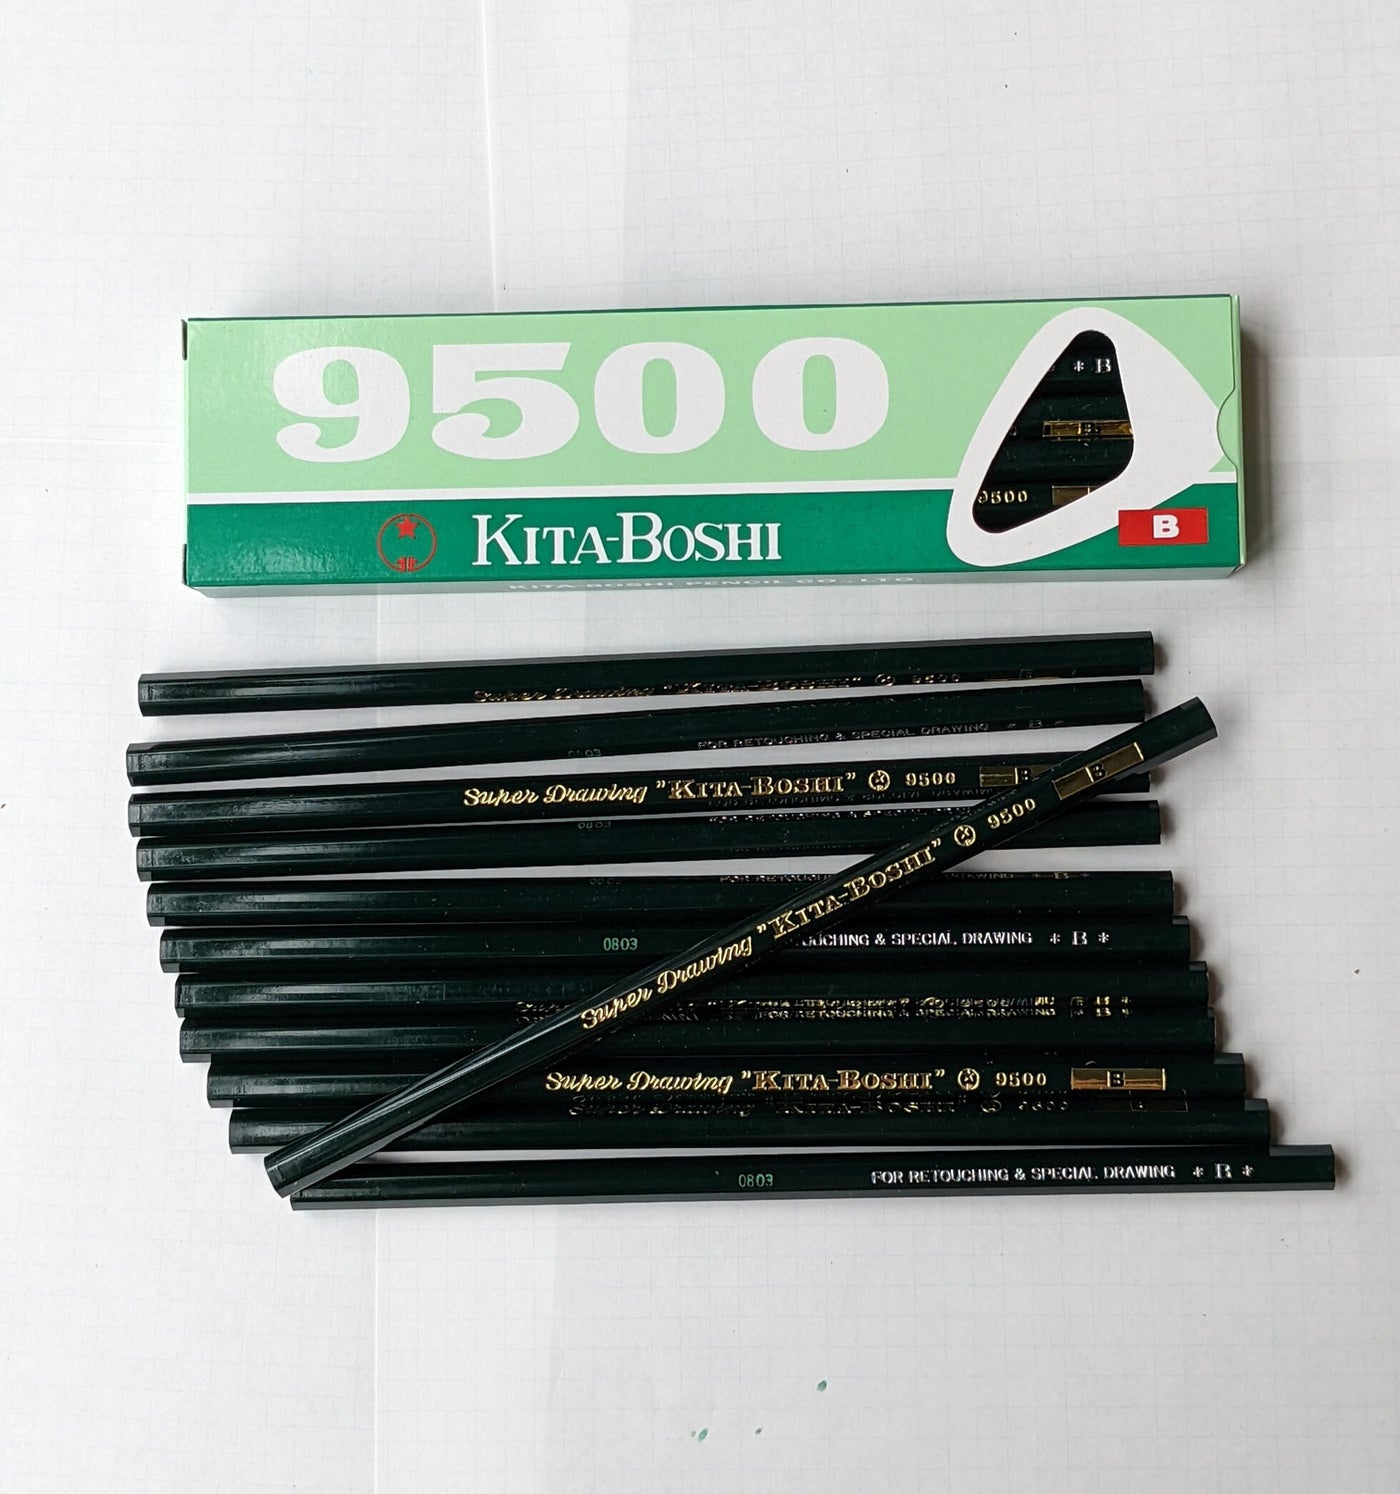 Kita-Boshi Pencils